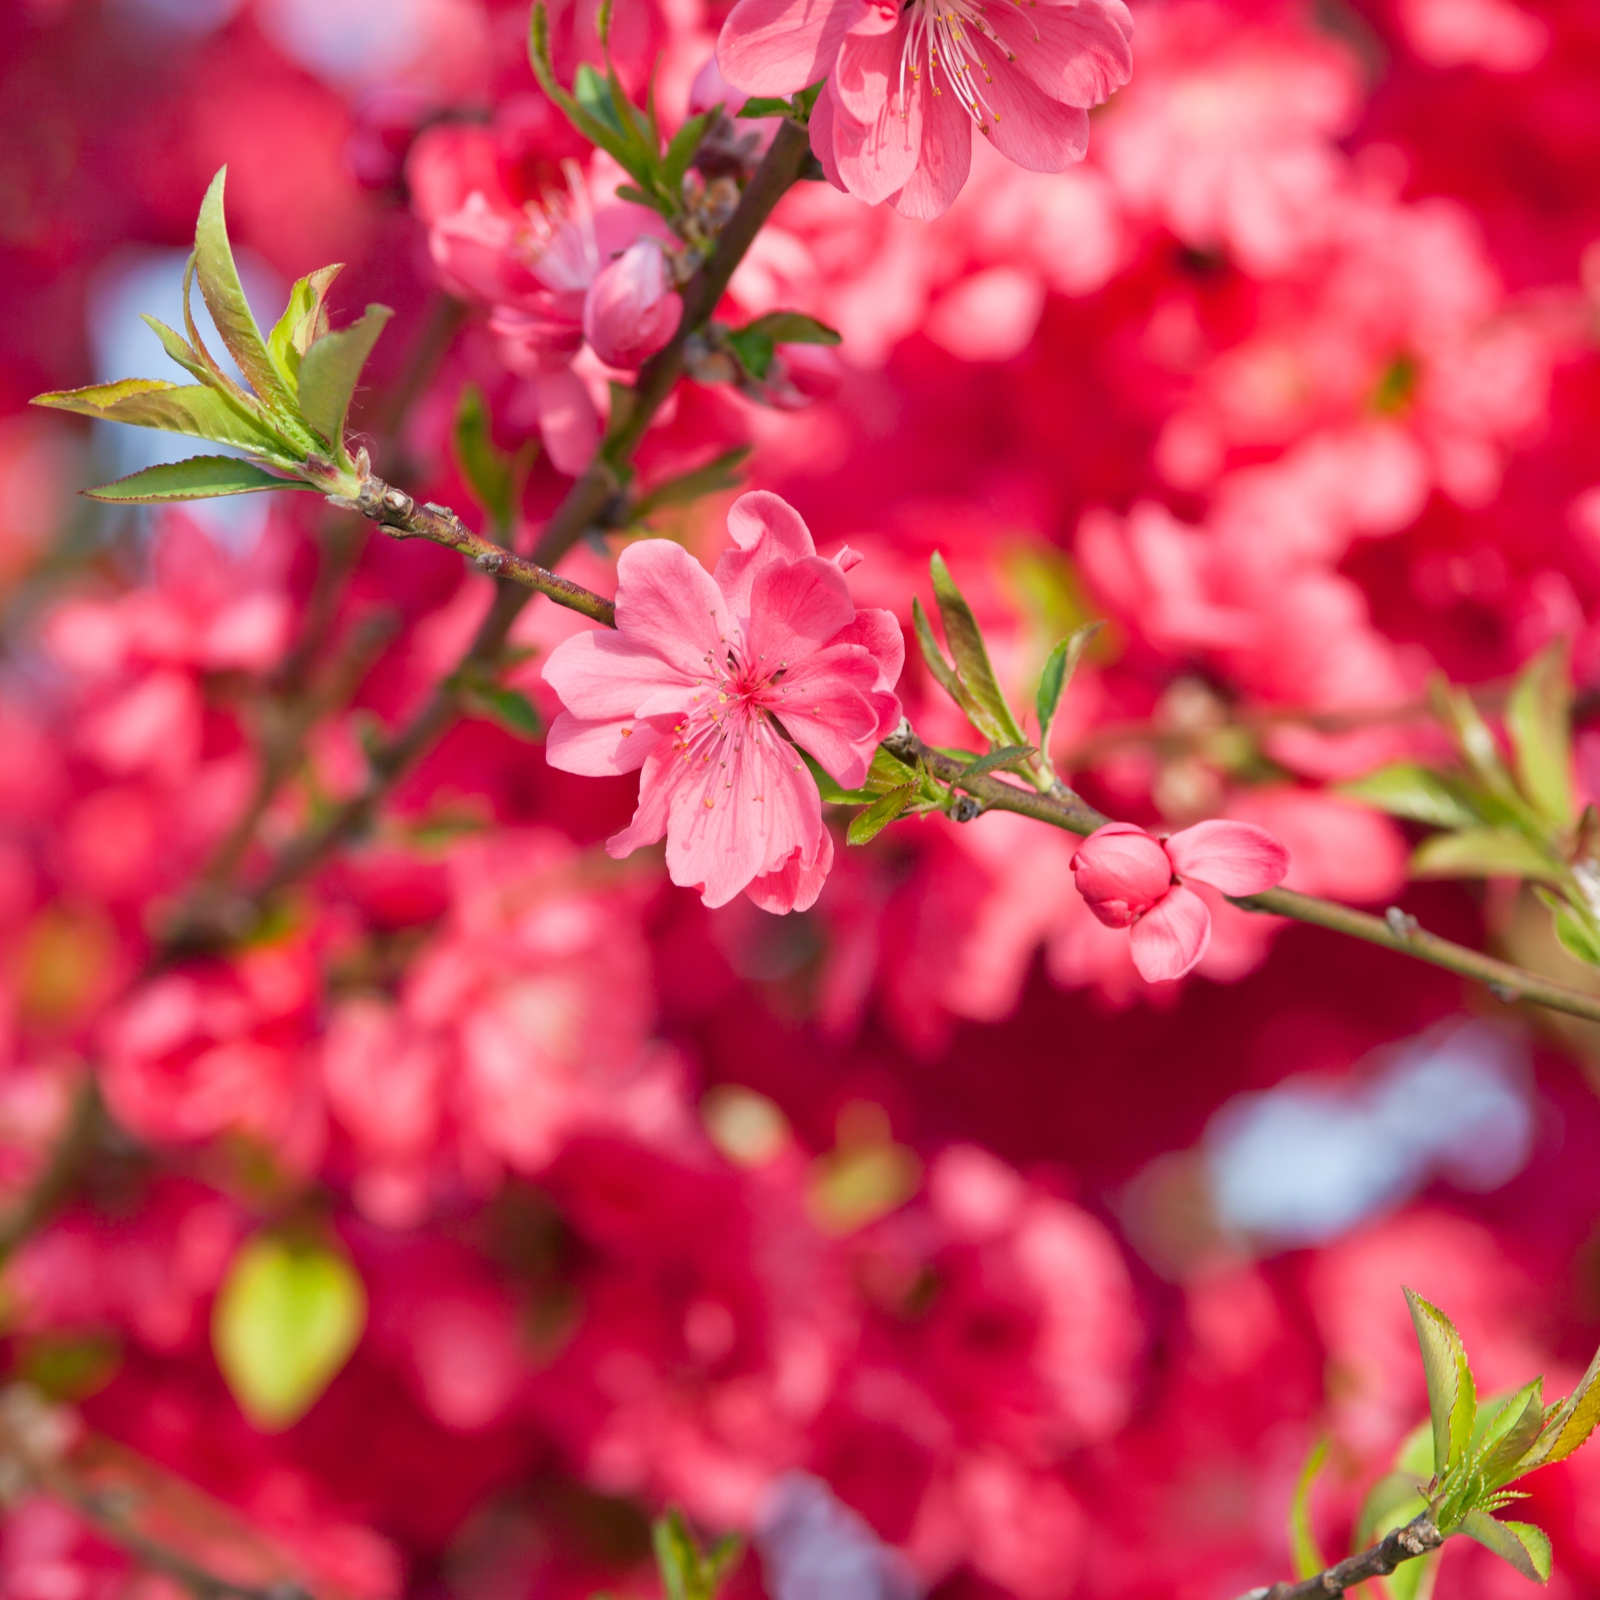 Leinwand Bild Natur & Blumen Blüten Zweig in pink